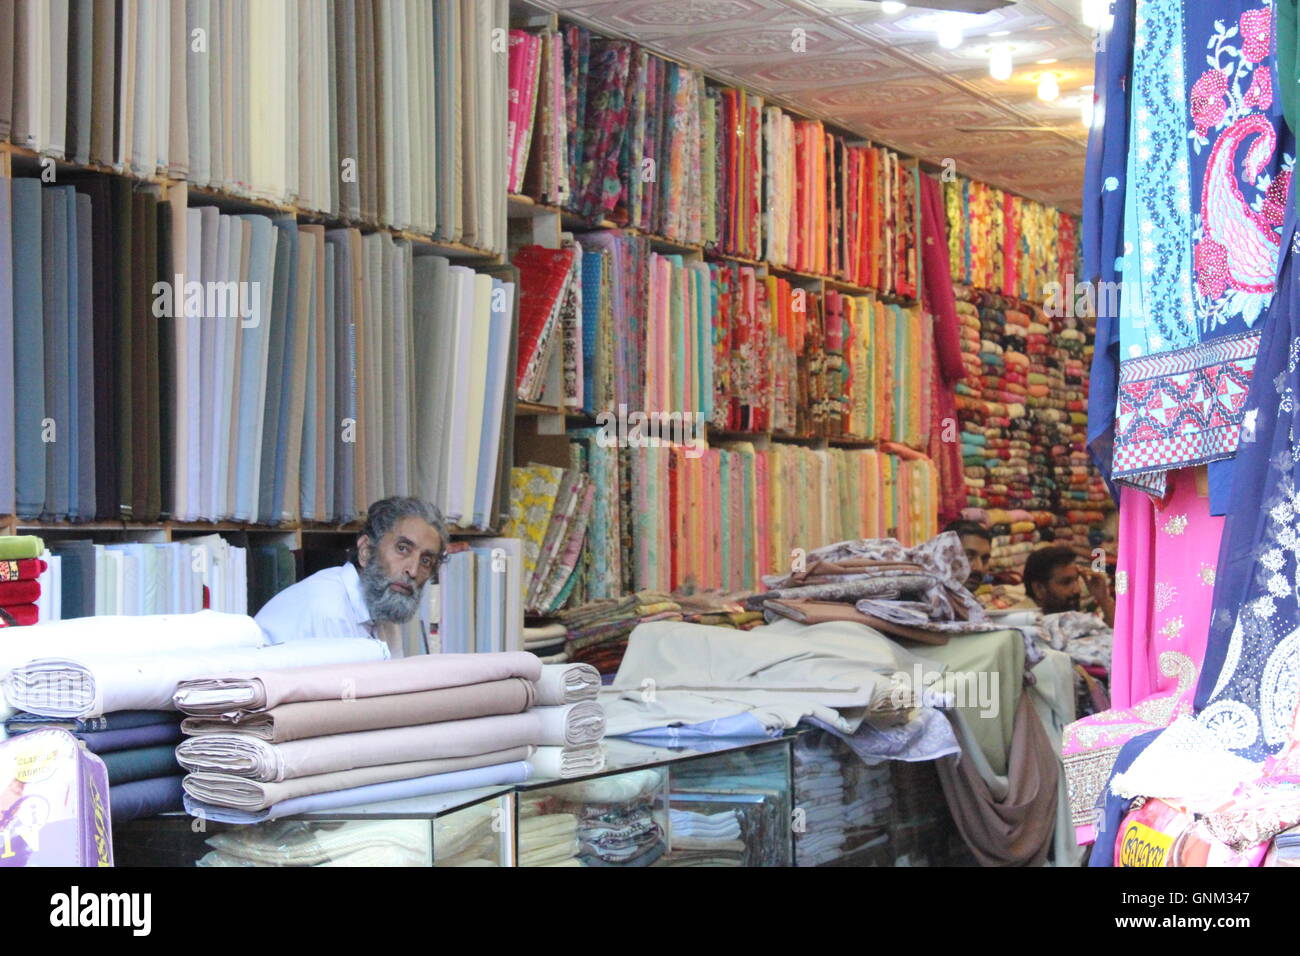 Ein Shop-Betreiber von einem Tuch Shop sitzt an der Theke, zeigt der Hintergrund einen Wand voller bunter als auch monochrome Tücher. Stockfoto